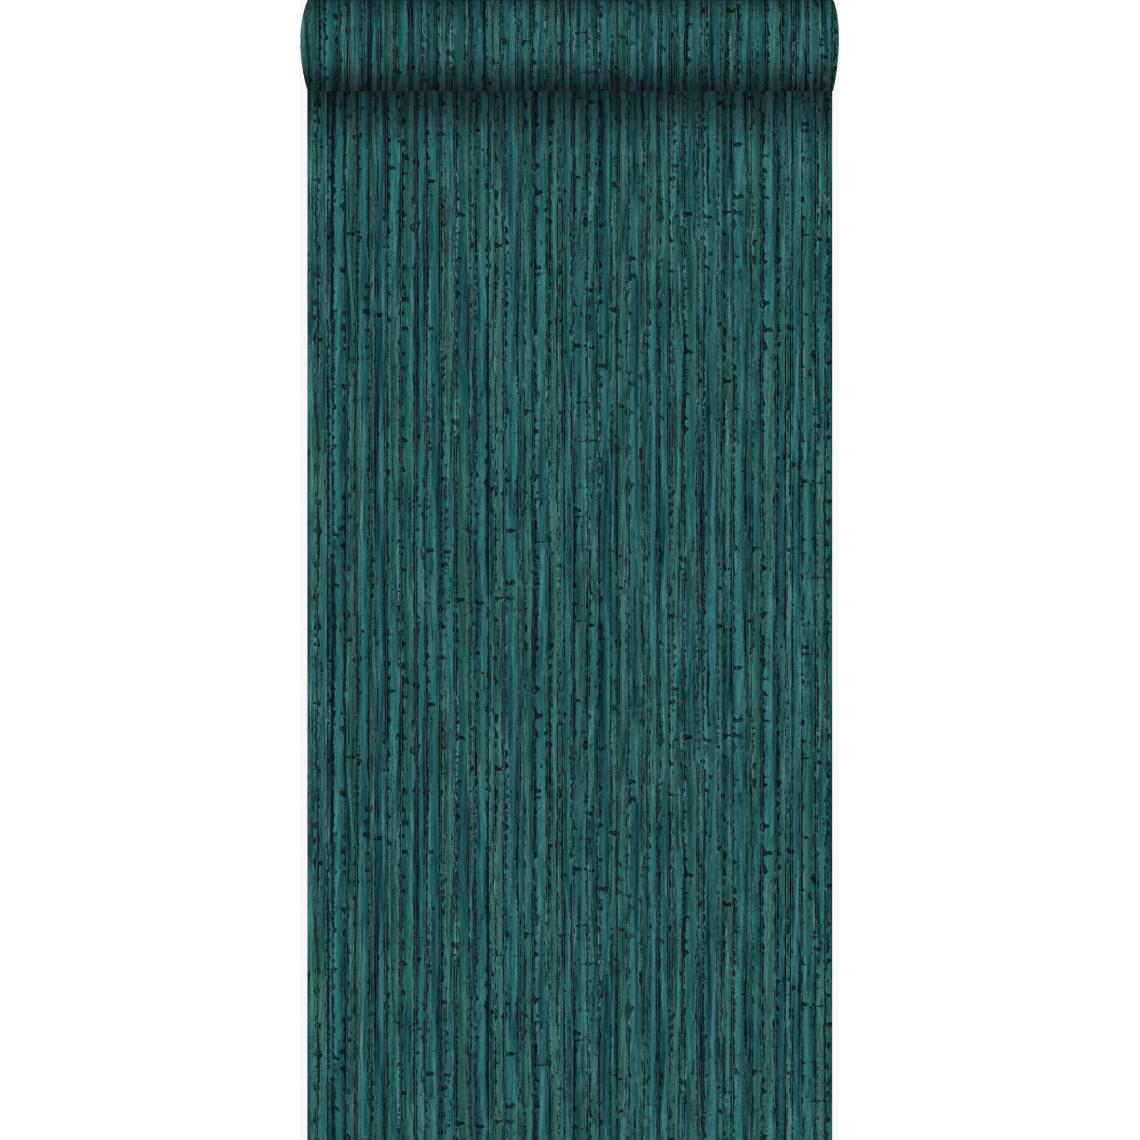 Origin - Origin papier peint bambou vert émeraude - 347403 - 53 cm x 10,05 m - Papier peint